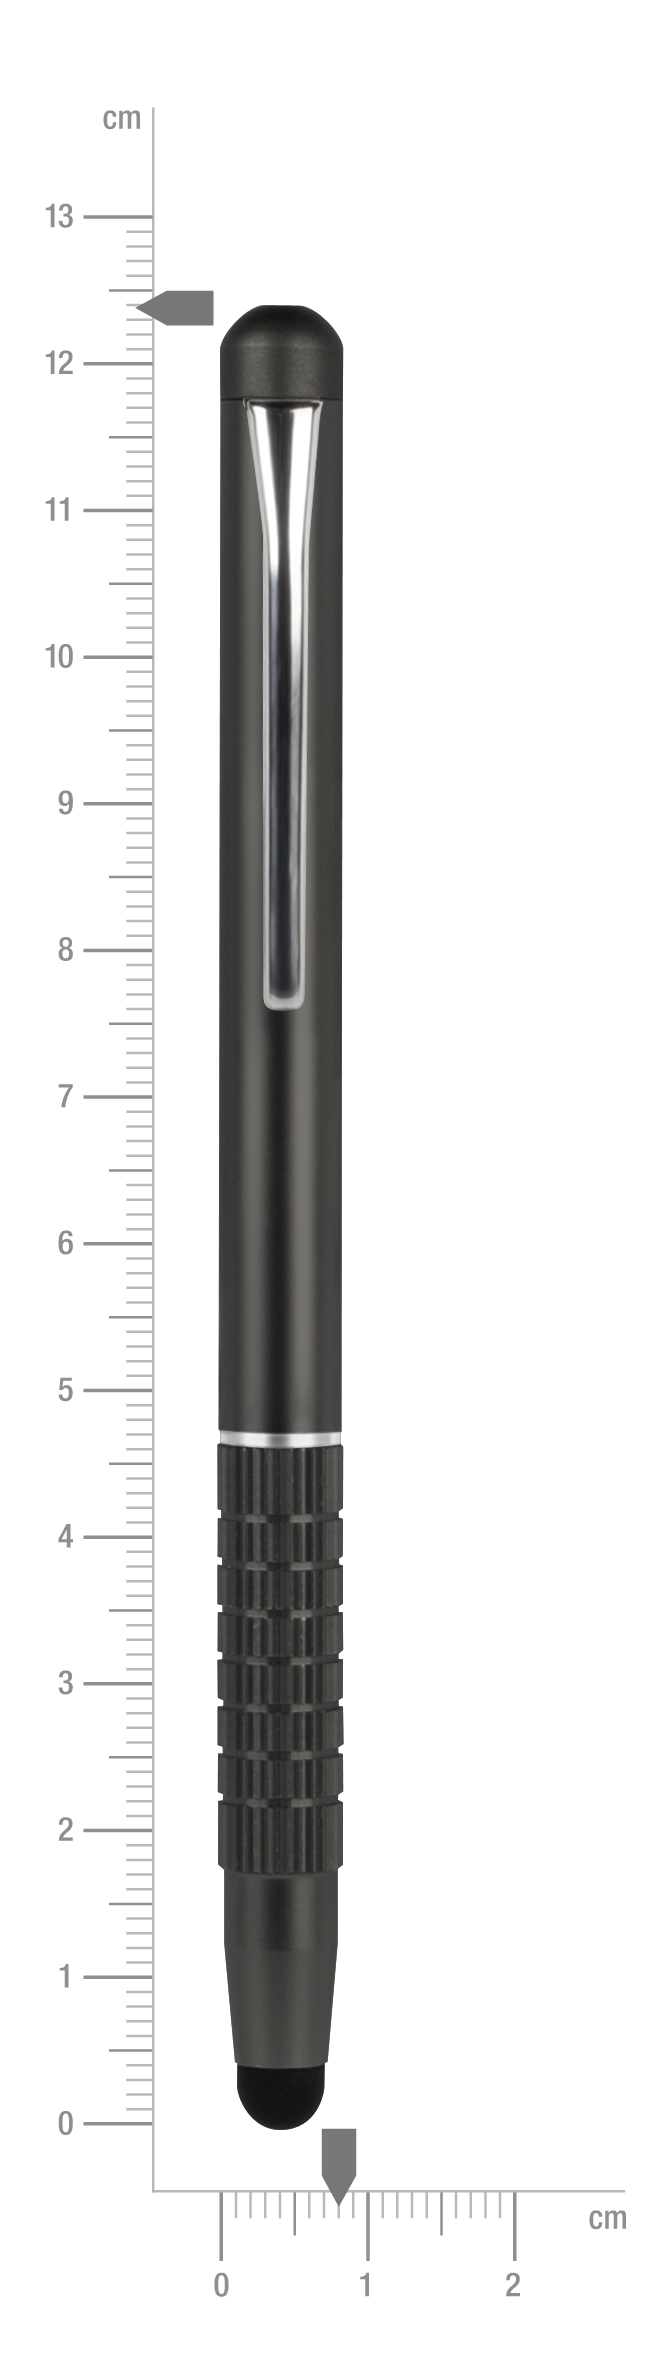 Quill SL-7006-BK Touchscreen-Eingabestift Schwarz SPEEDLINK